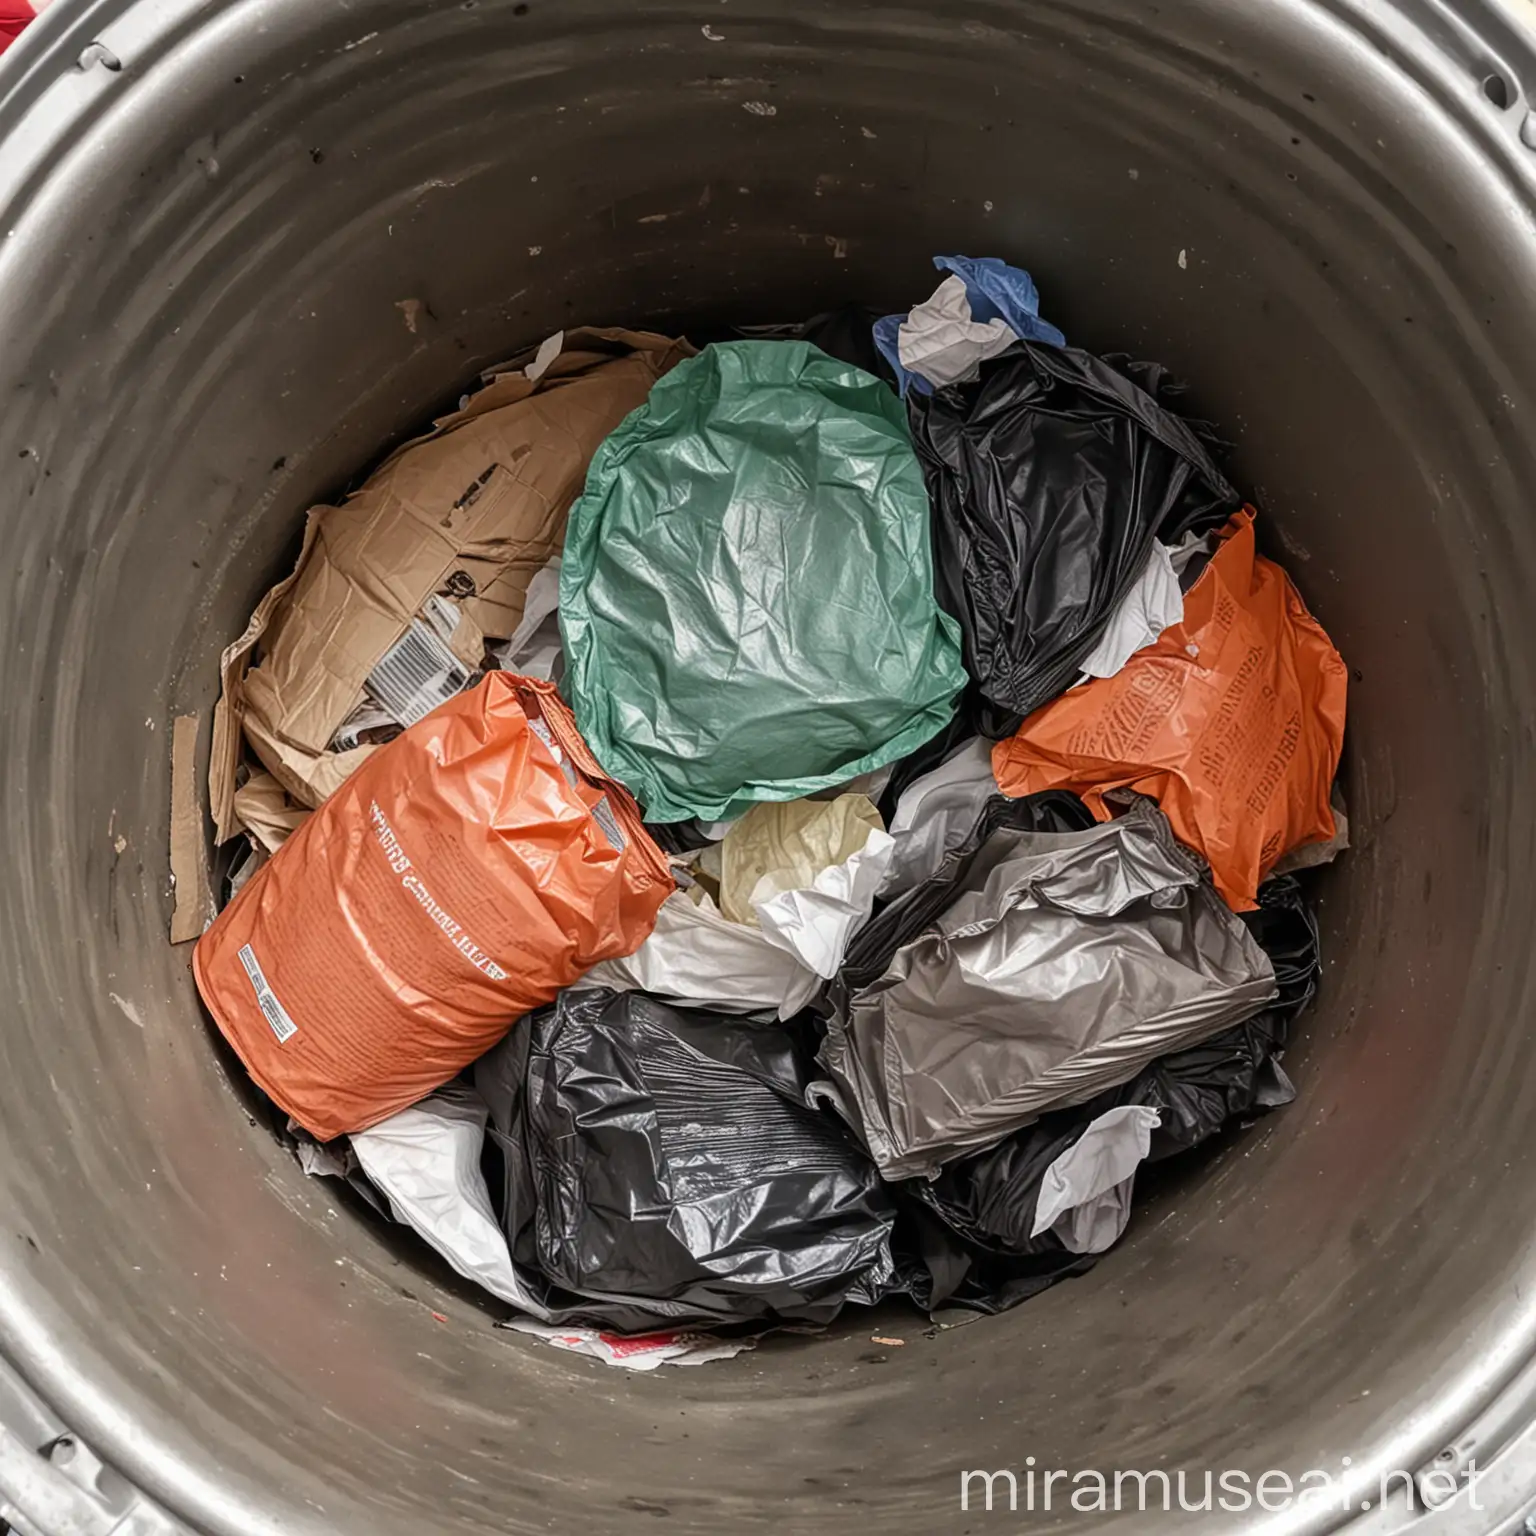 inside a trashcan 